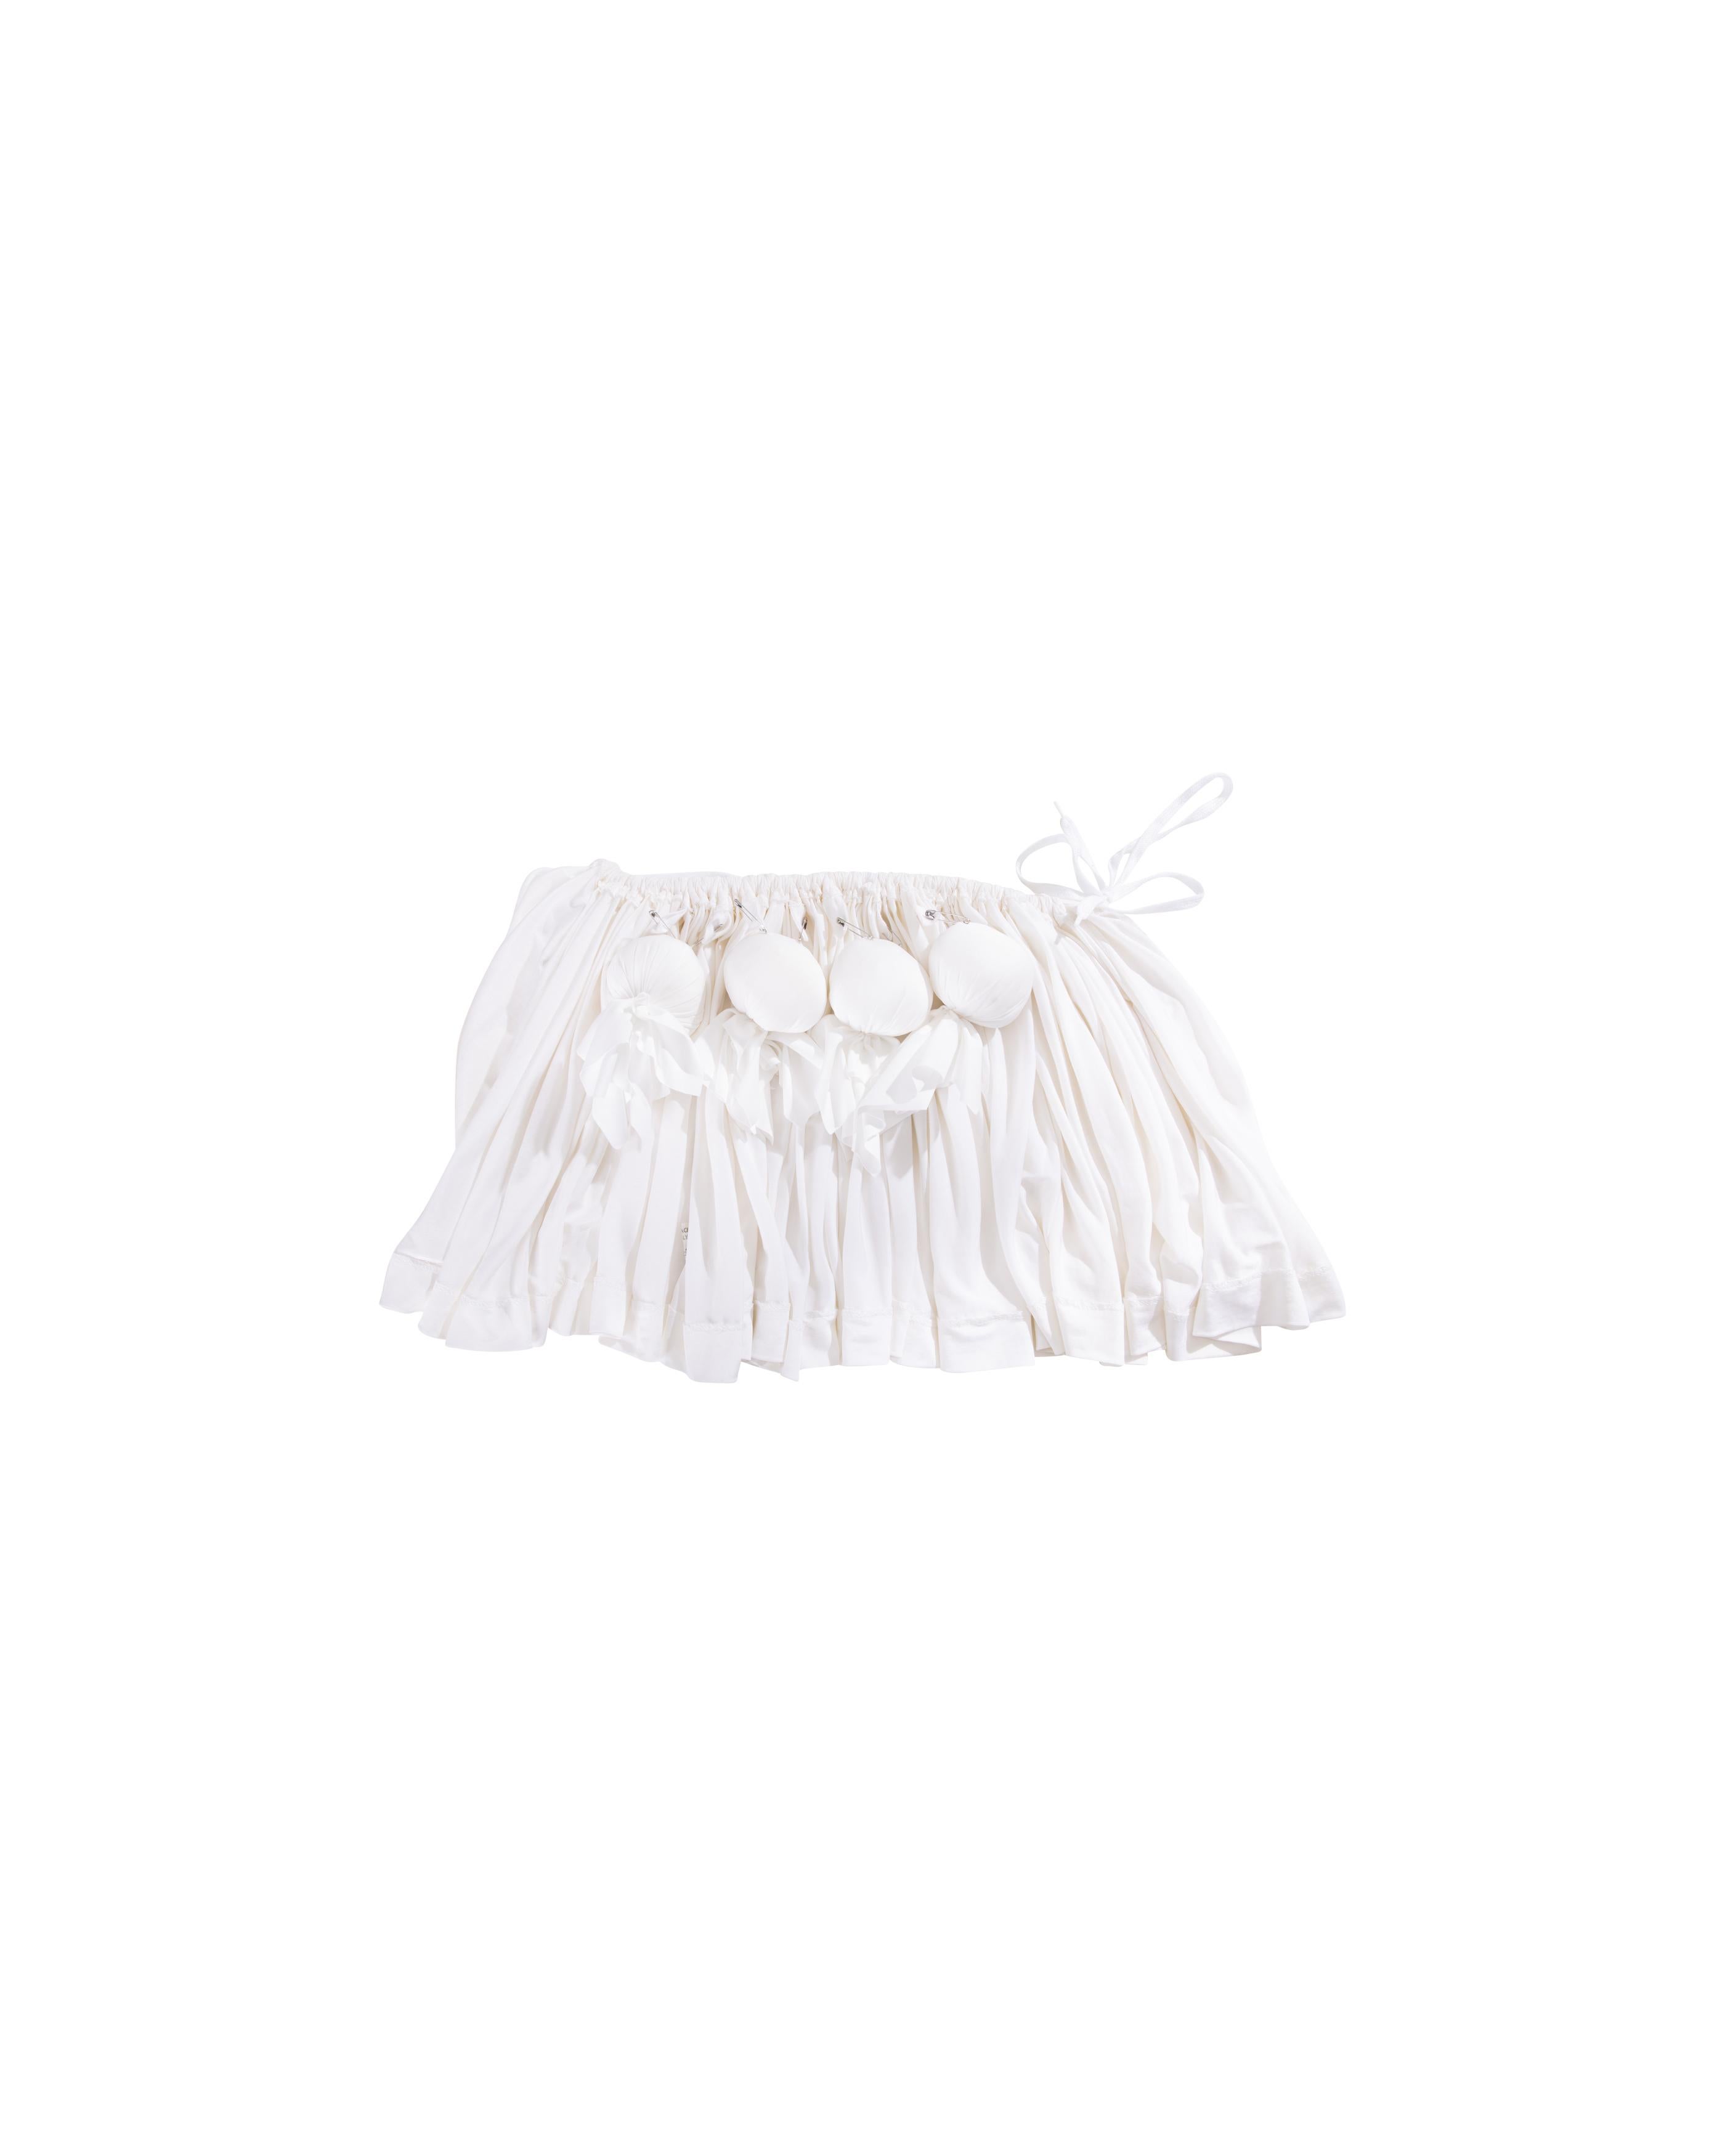 S/S 1988 Vivienne Westwood White Mini jupe avec buste amovible 5